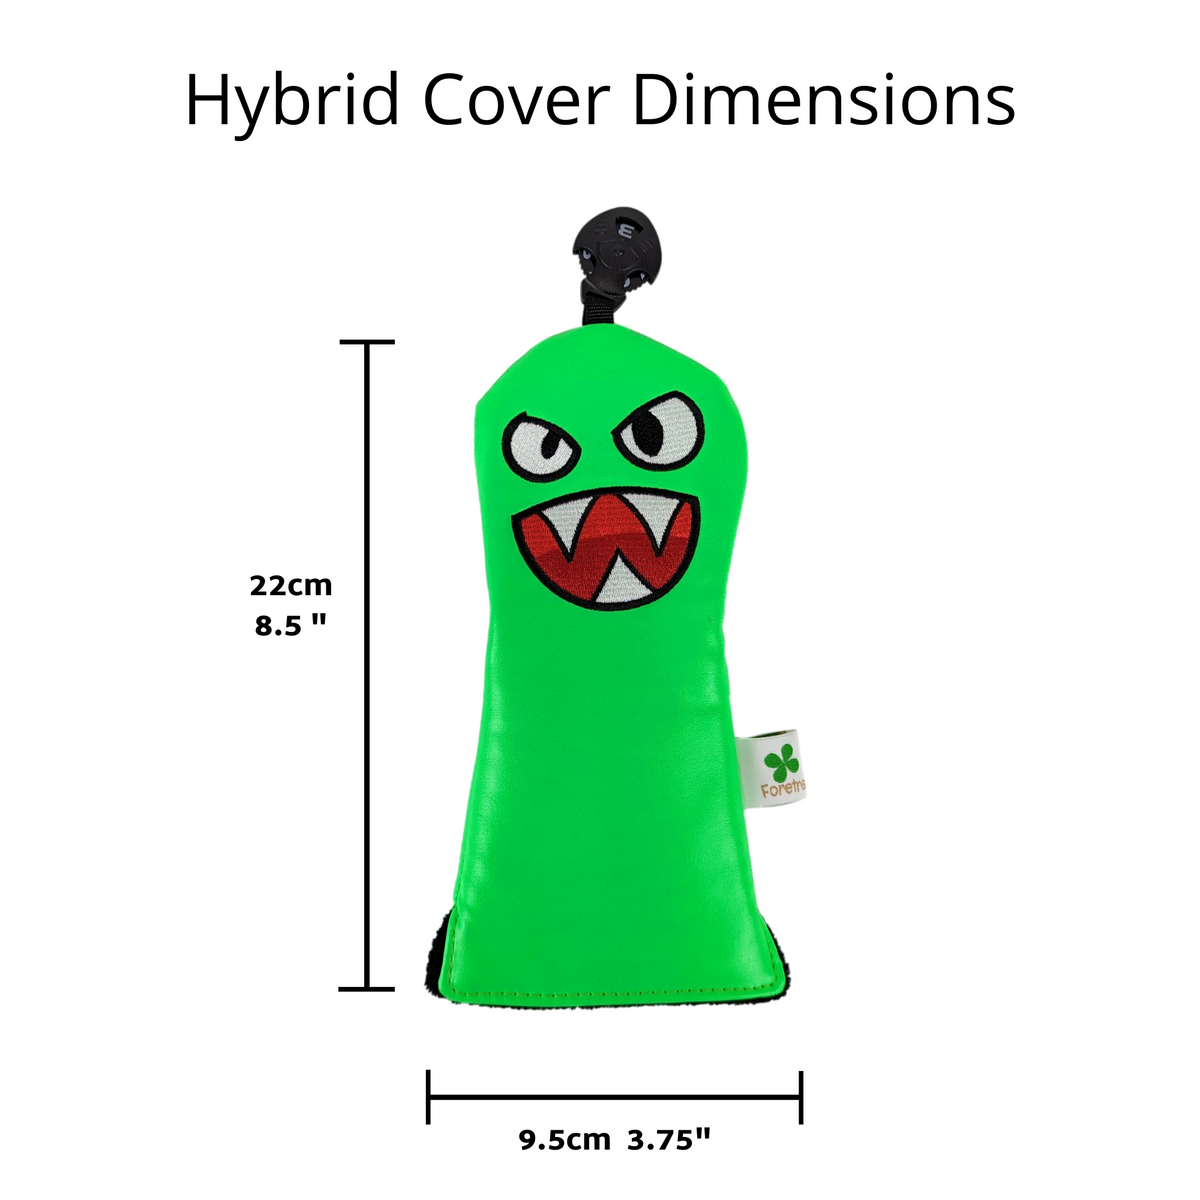 Green Monster - Utility / Hybrid Headcover